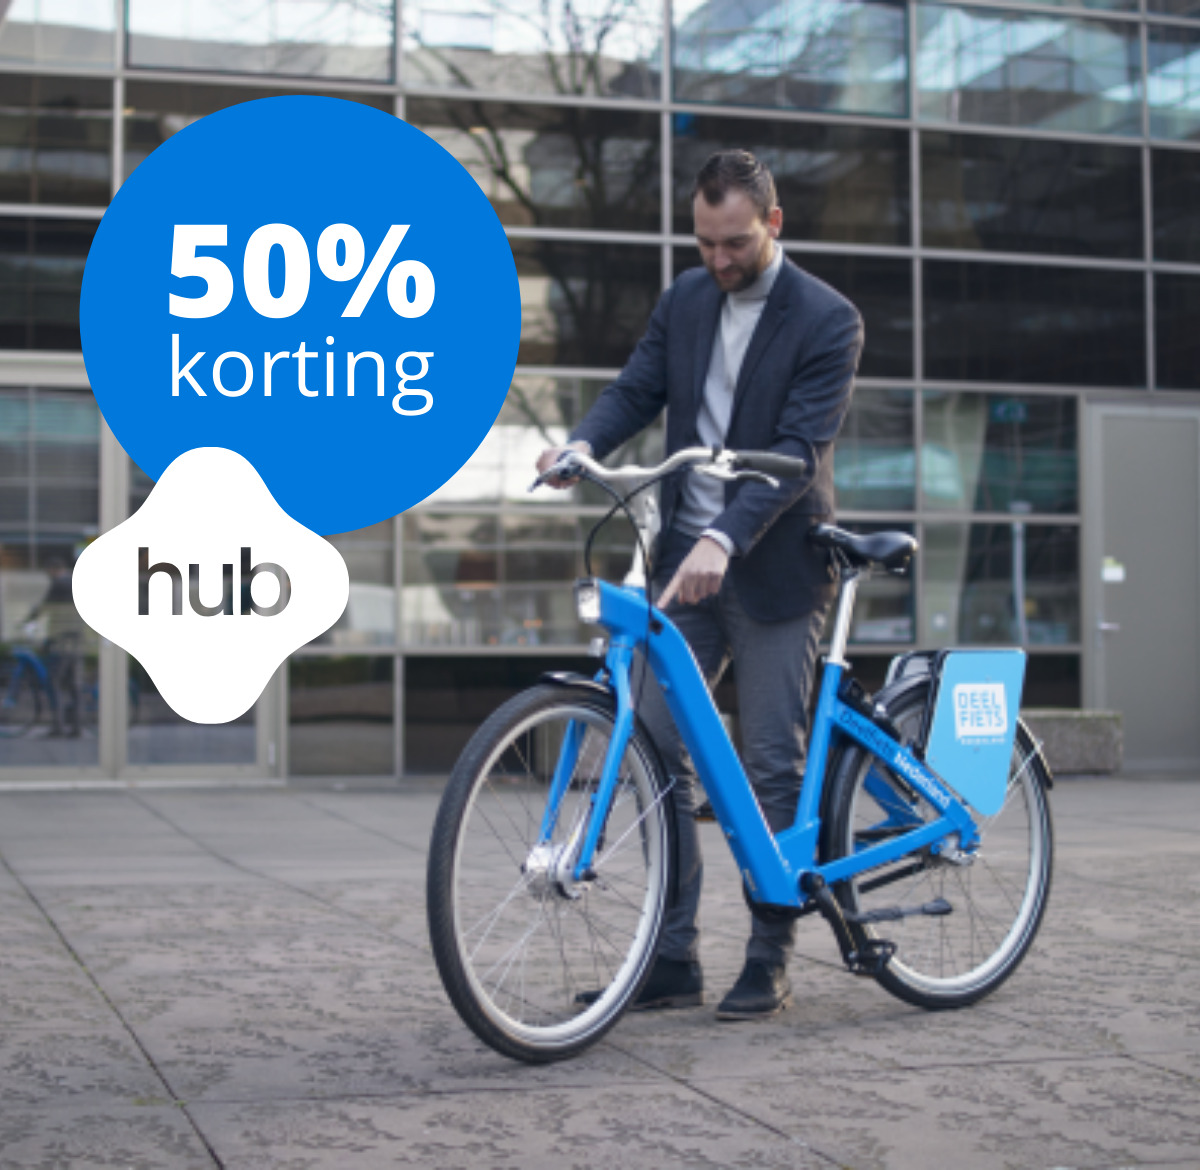 Met 50% op de hubfiets vanaf hub P+R - Reisviahub.nl